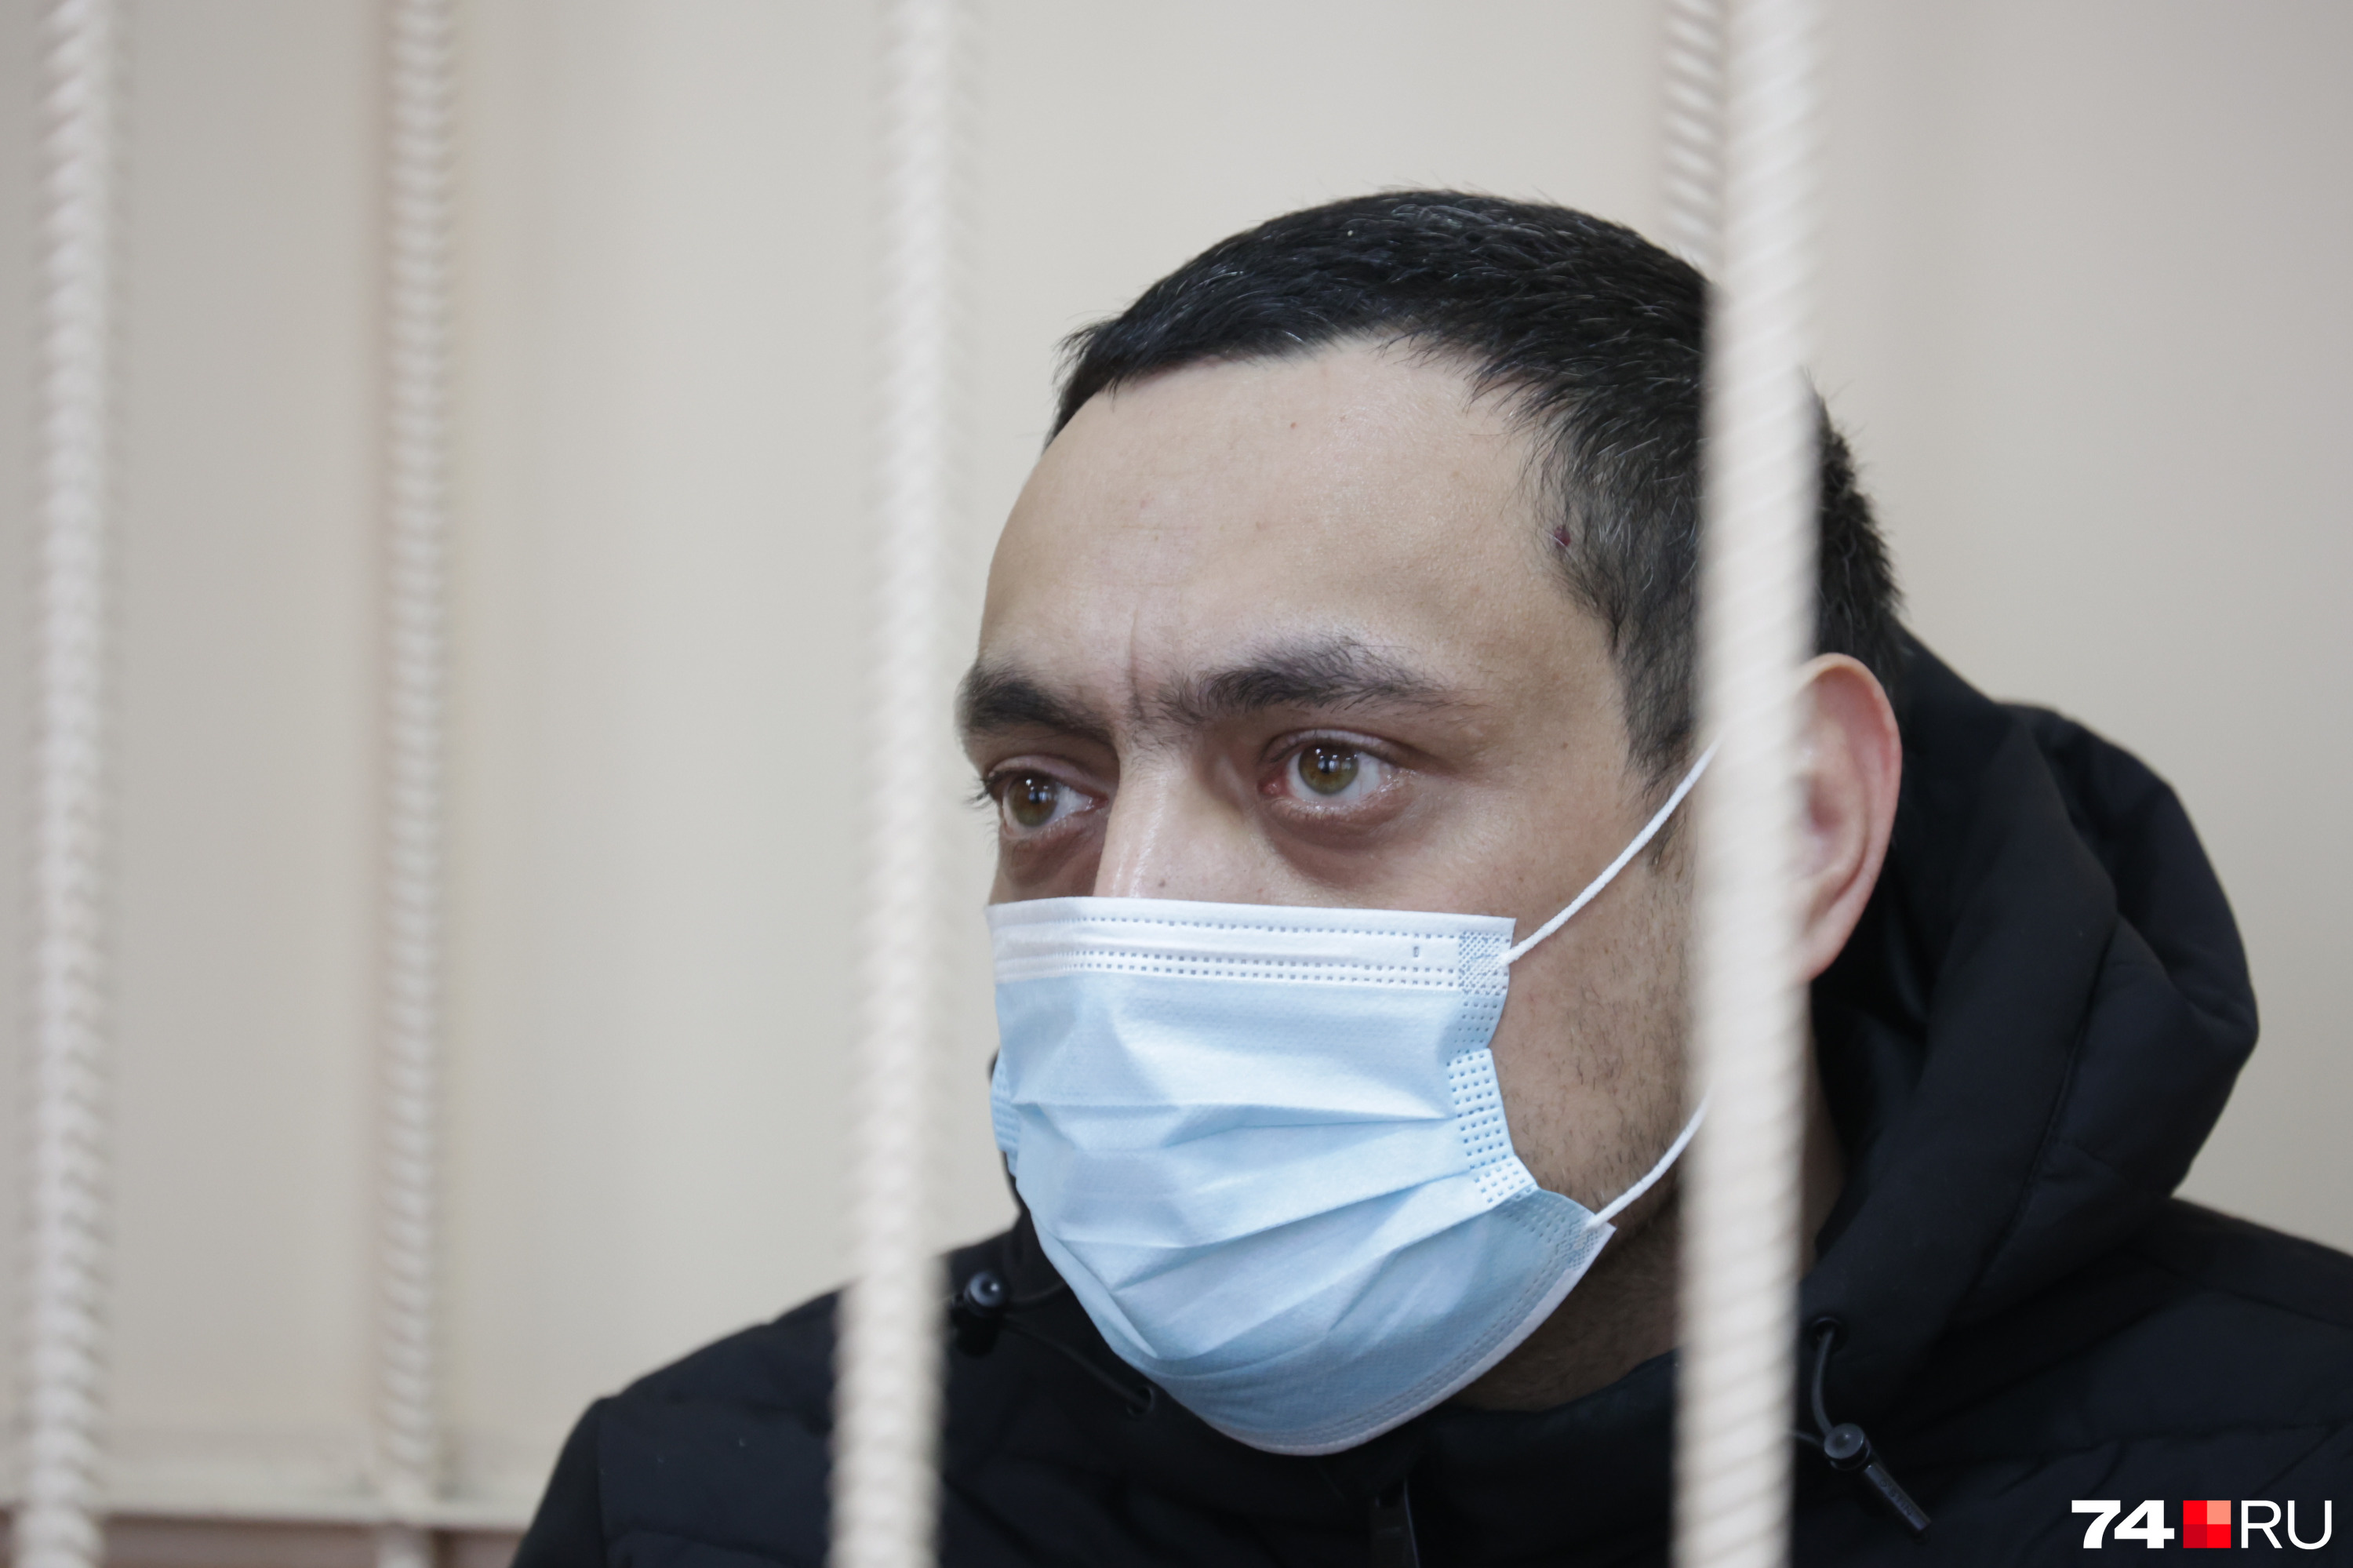 Александр Рудов в суде пояснил — был уверен, что с Настей всё будет в порядке. О том, что ранение окажется смертельным, не догадывался